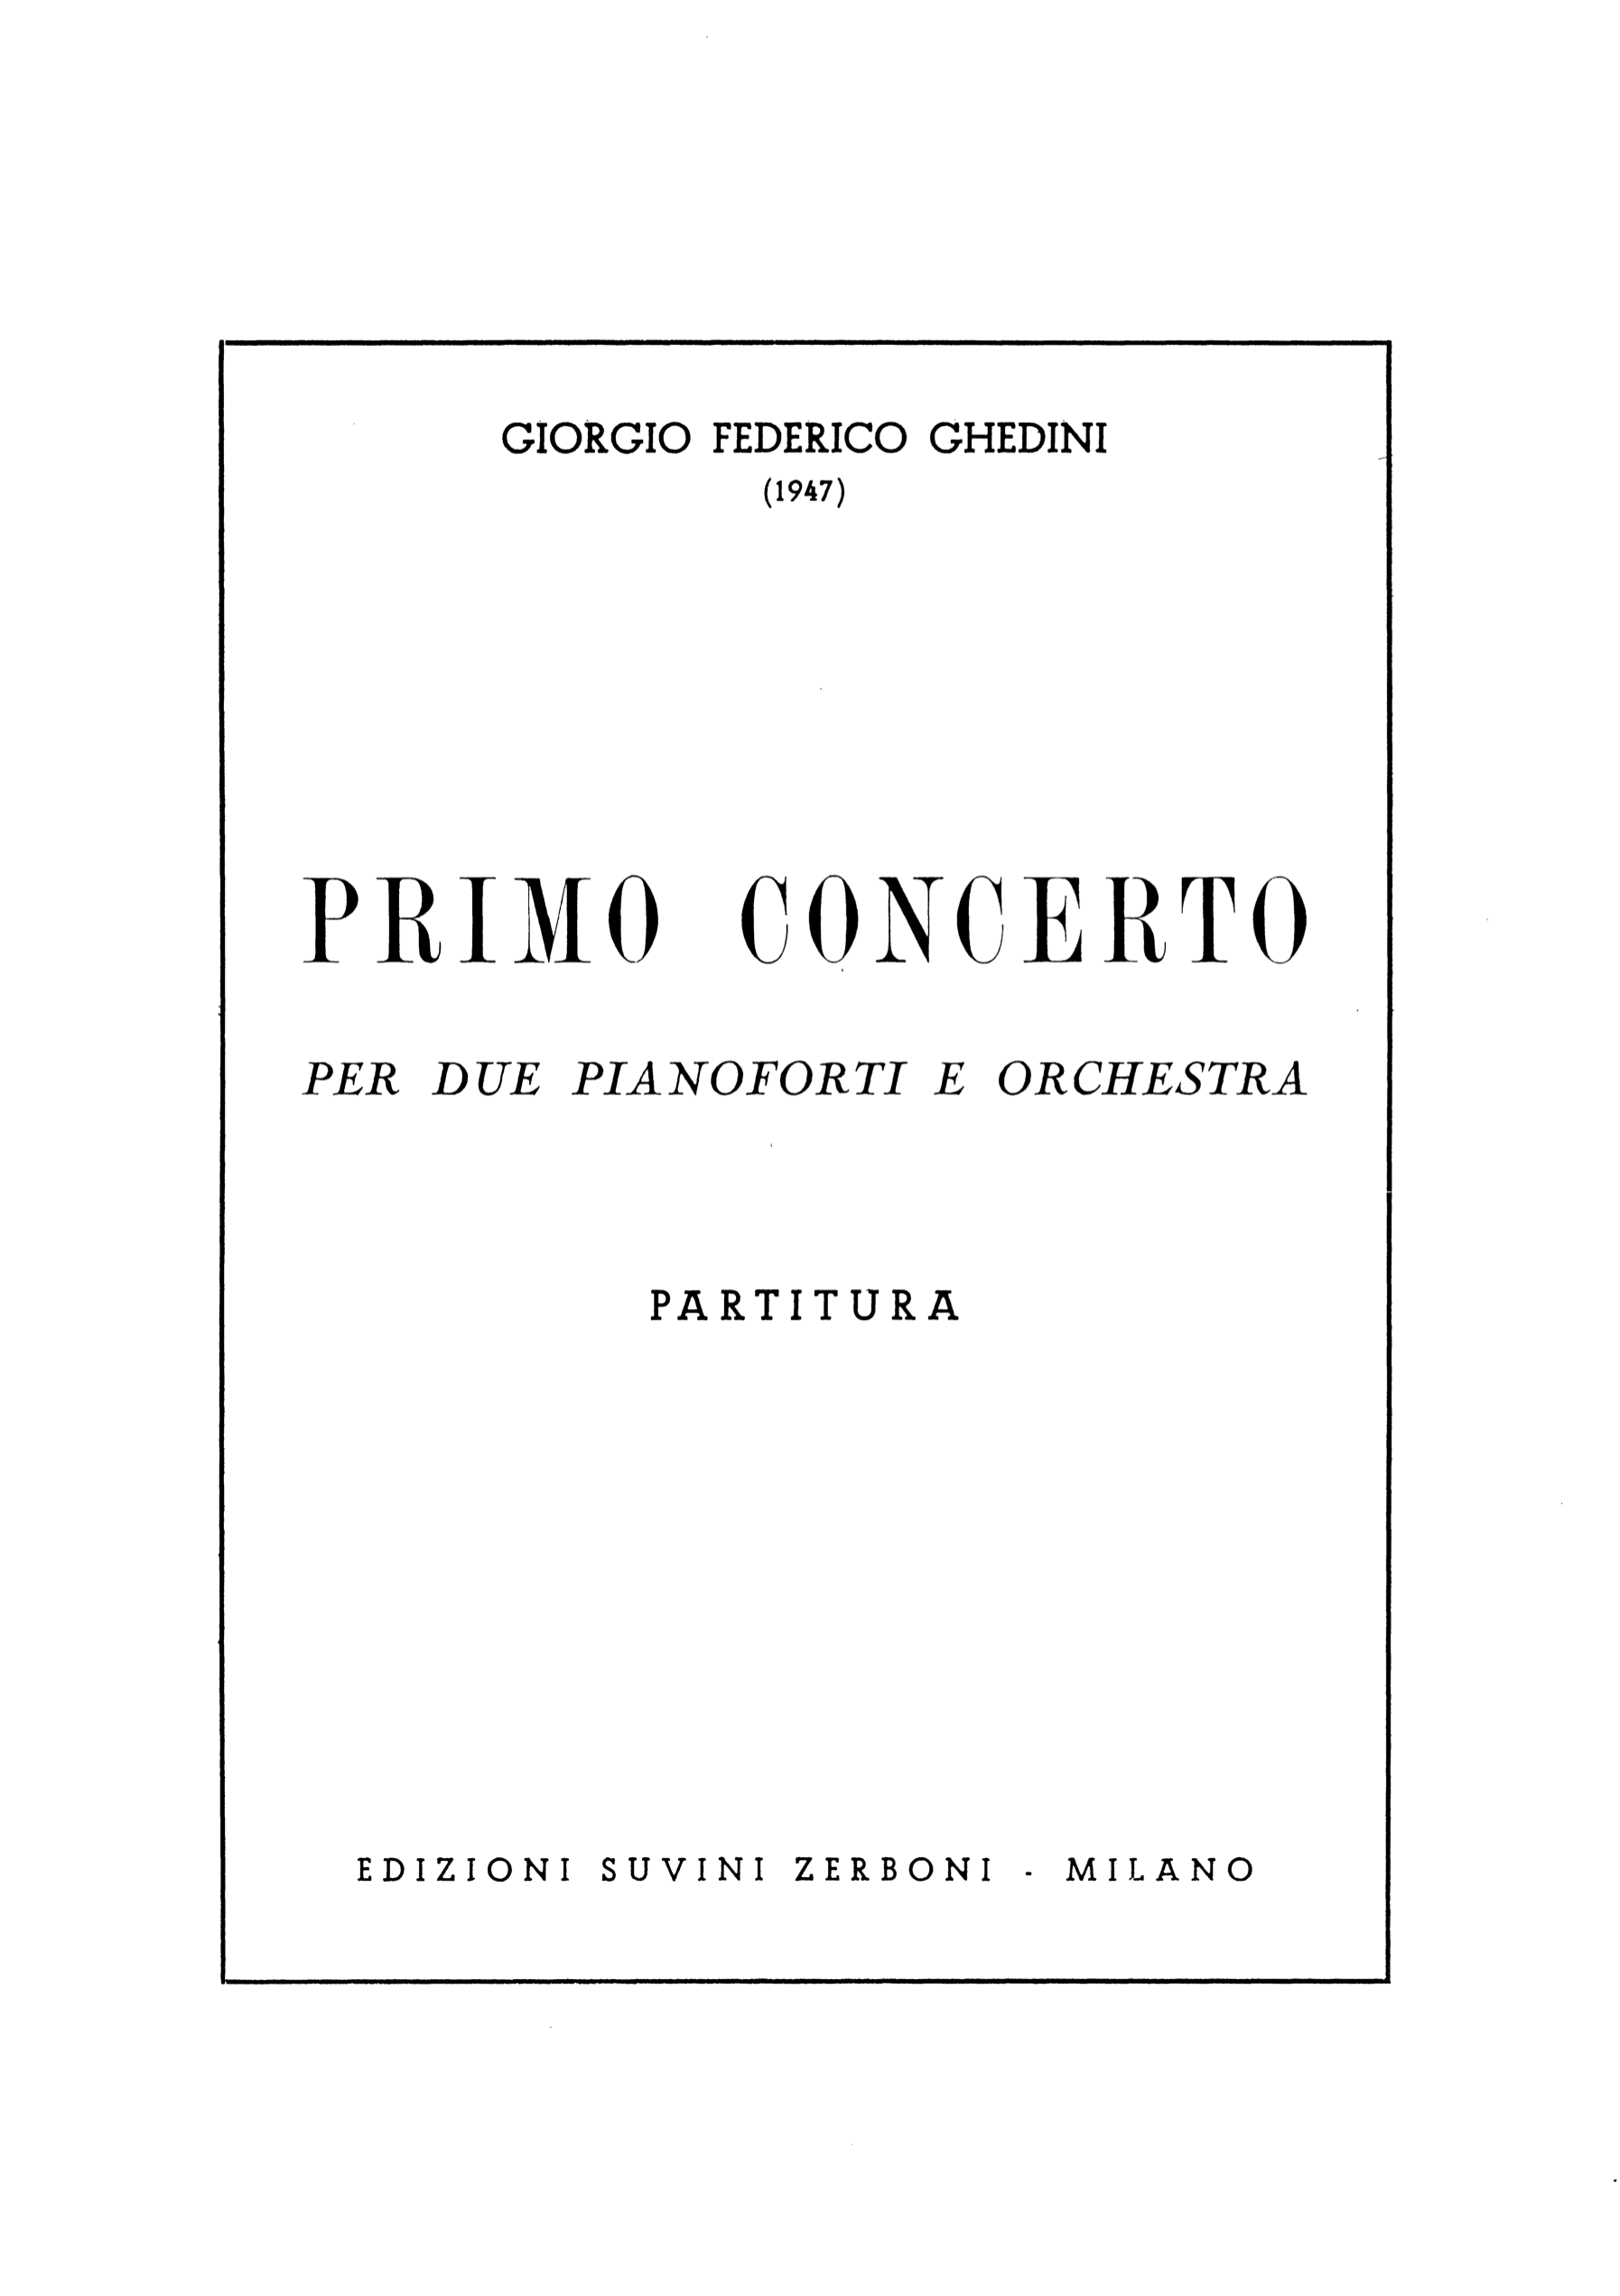 Primo Concerto per due pianoforti e orchestra_Ghedini 1